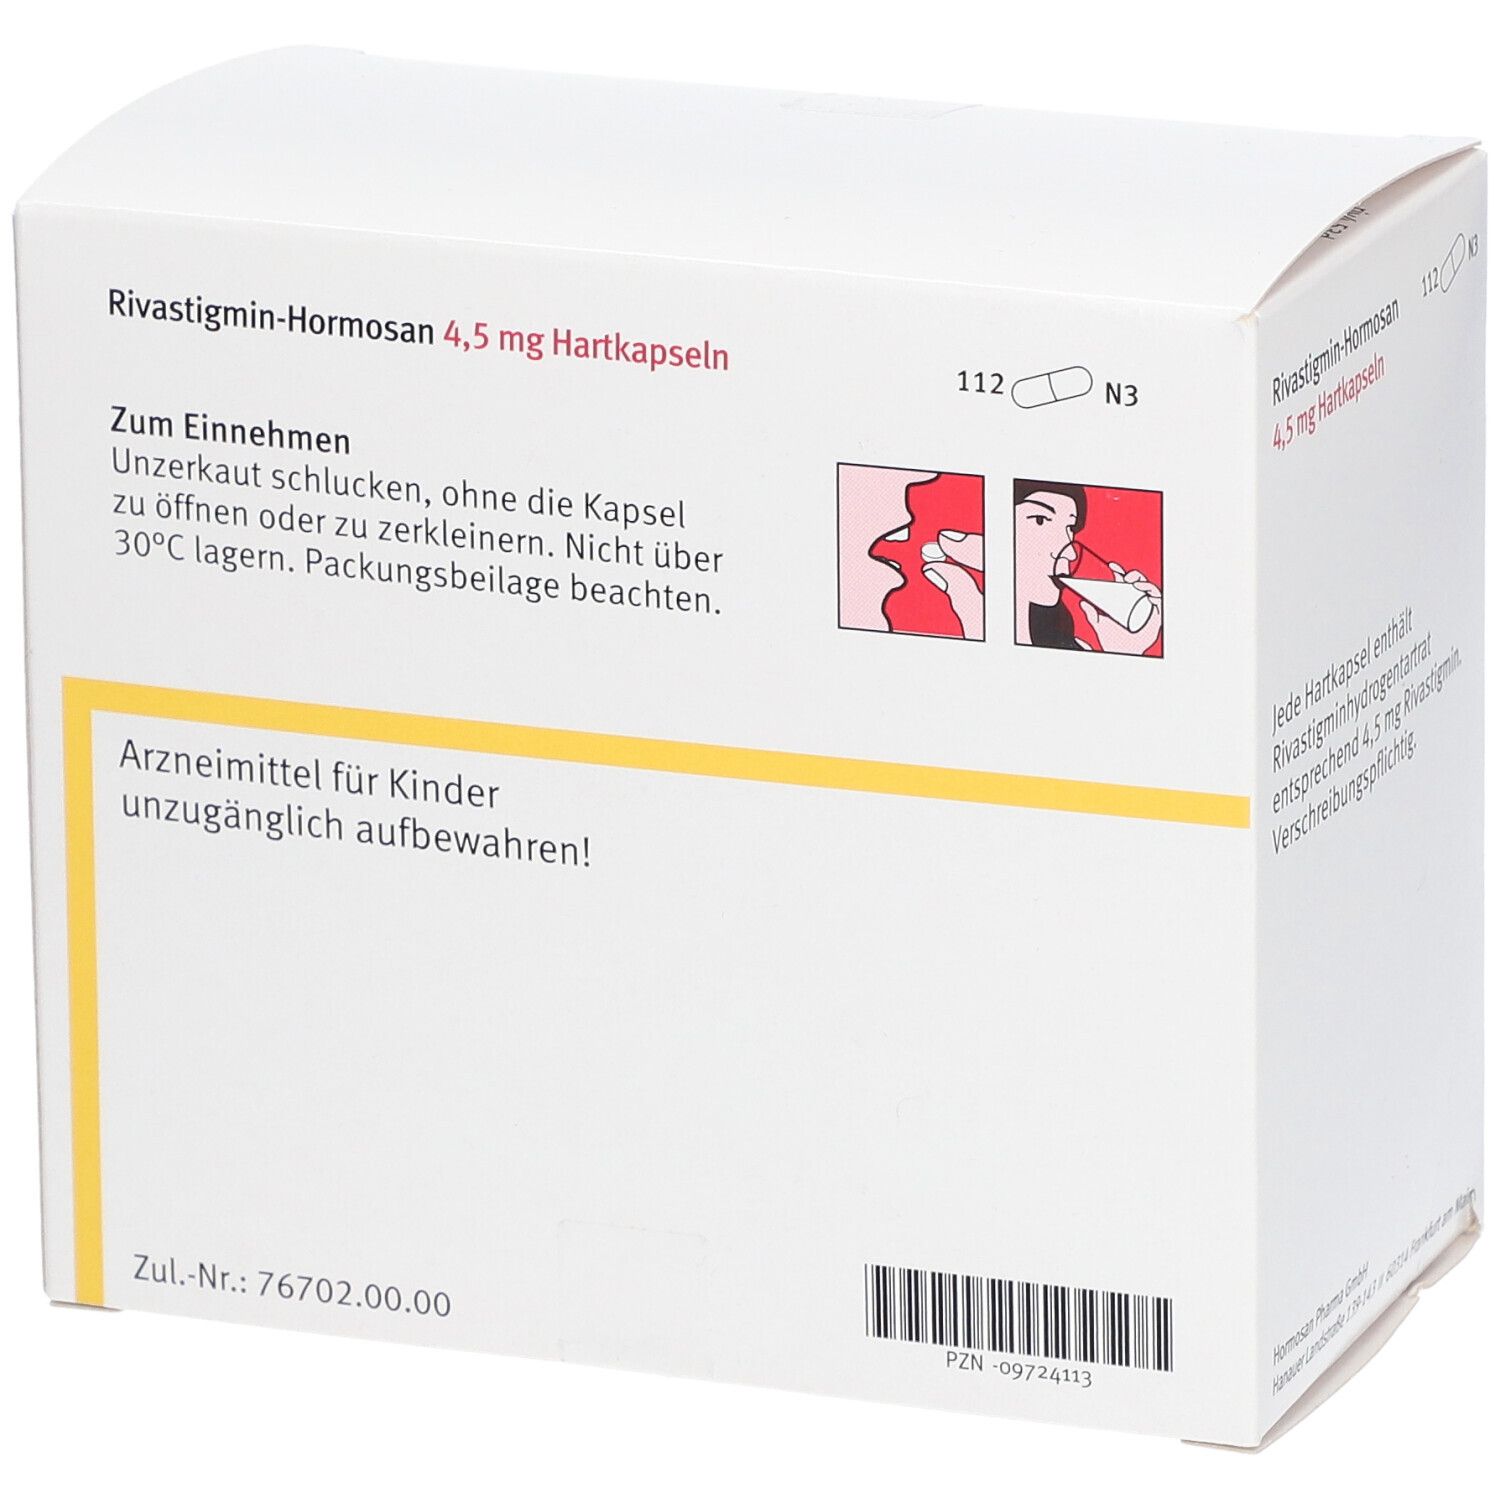 Rivastigmin-Hormosan 4,5 mg